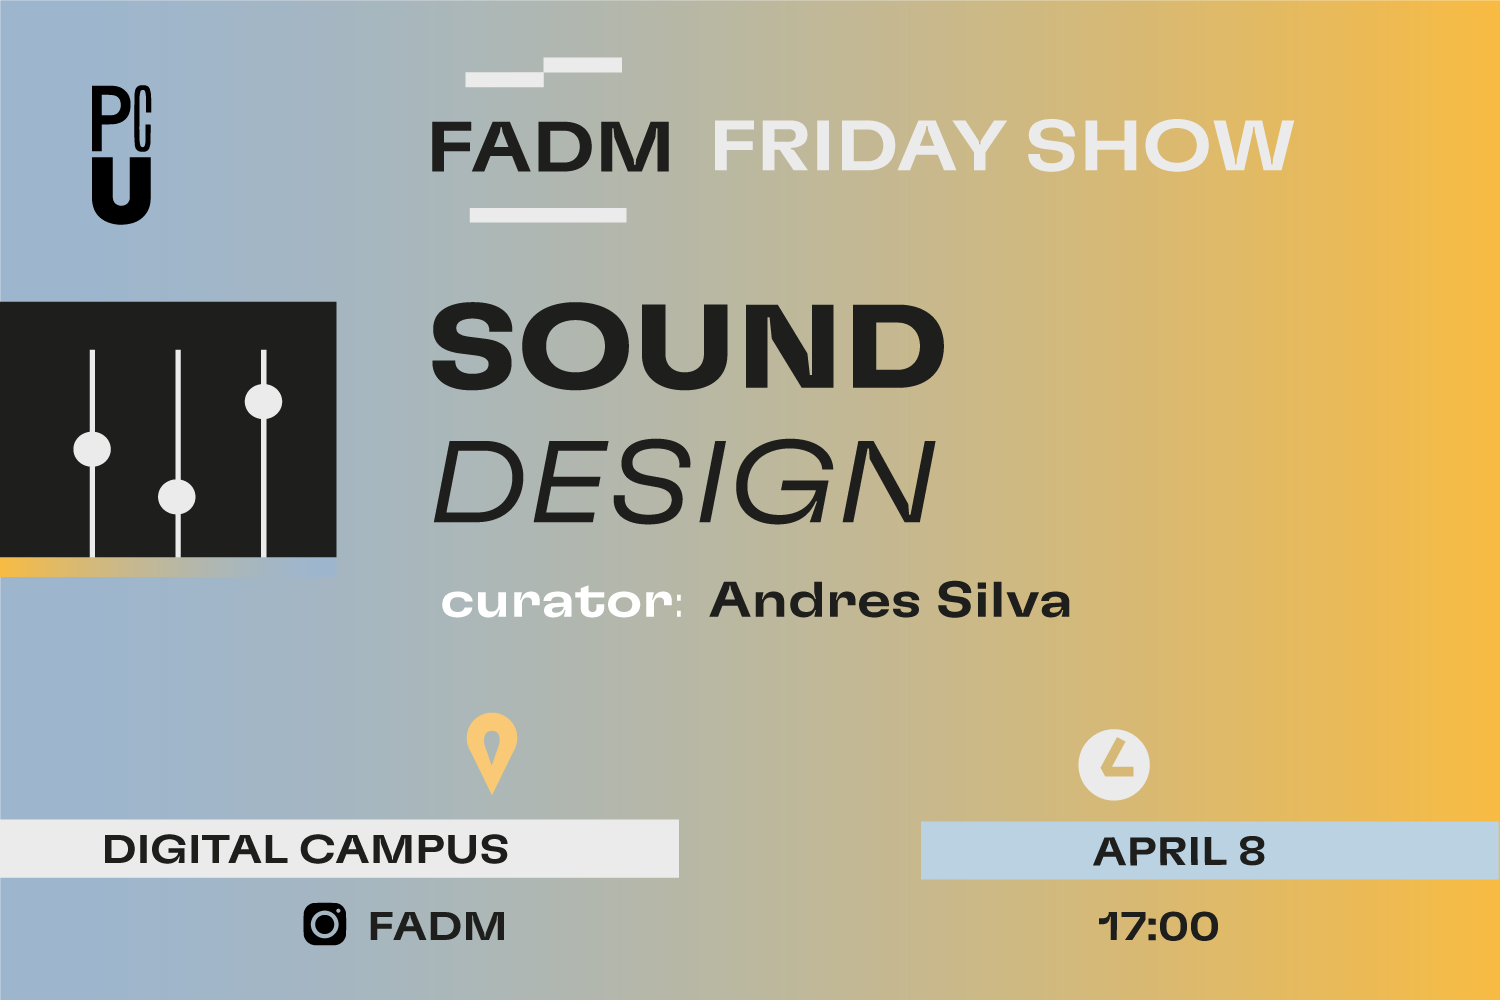 PCU Friday Show Sound Design